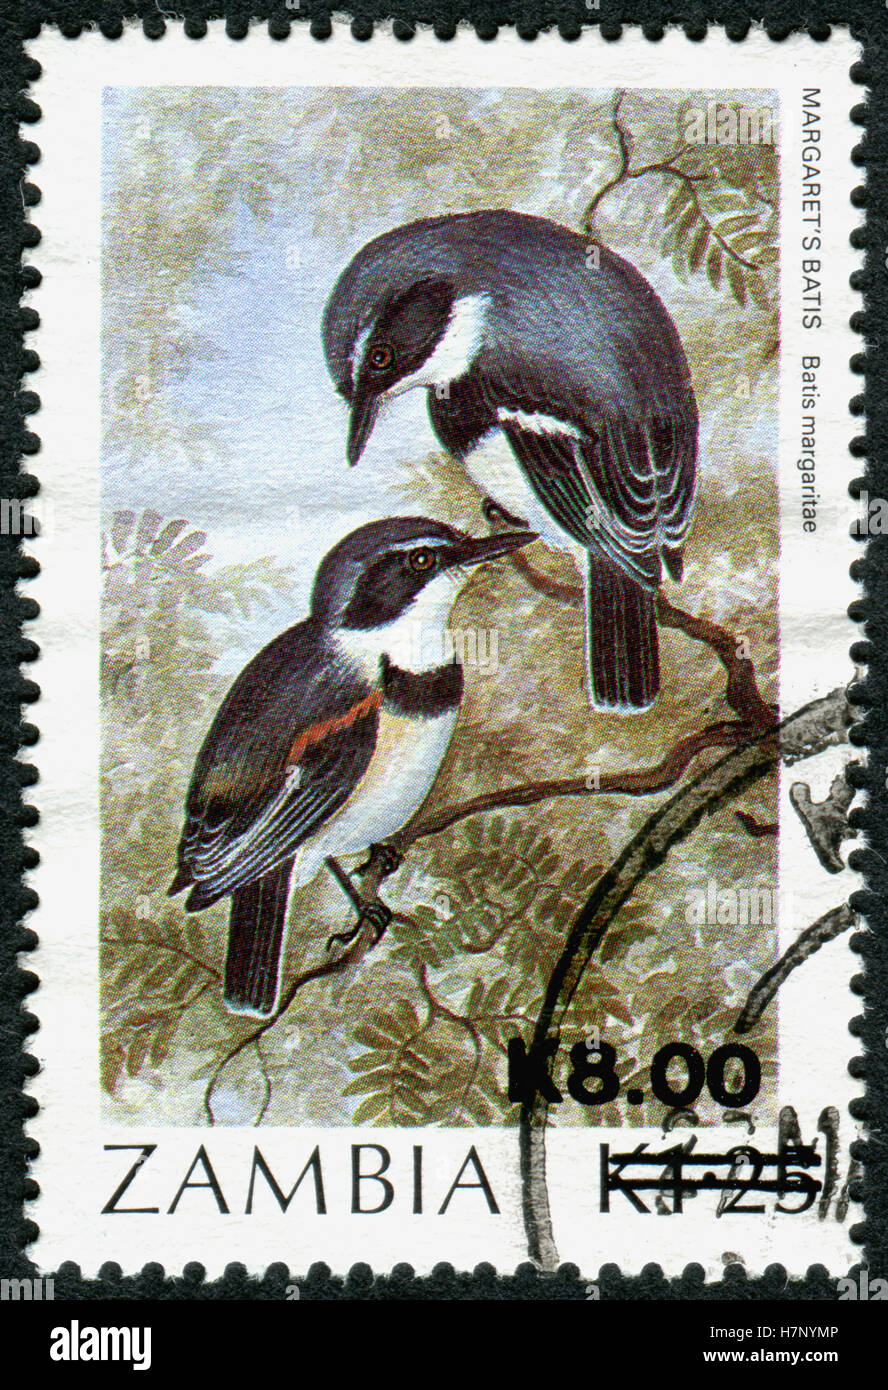 ZAMBIA - CIRCA 1989: A stamp printed in Zambia, shows a bird Boulton's batis (Batis margaritae), circa 1989 Stock Photo